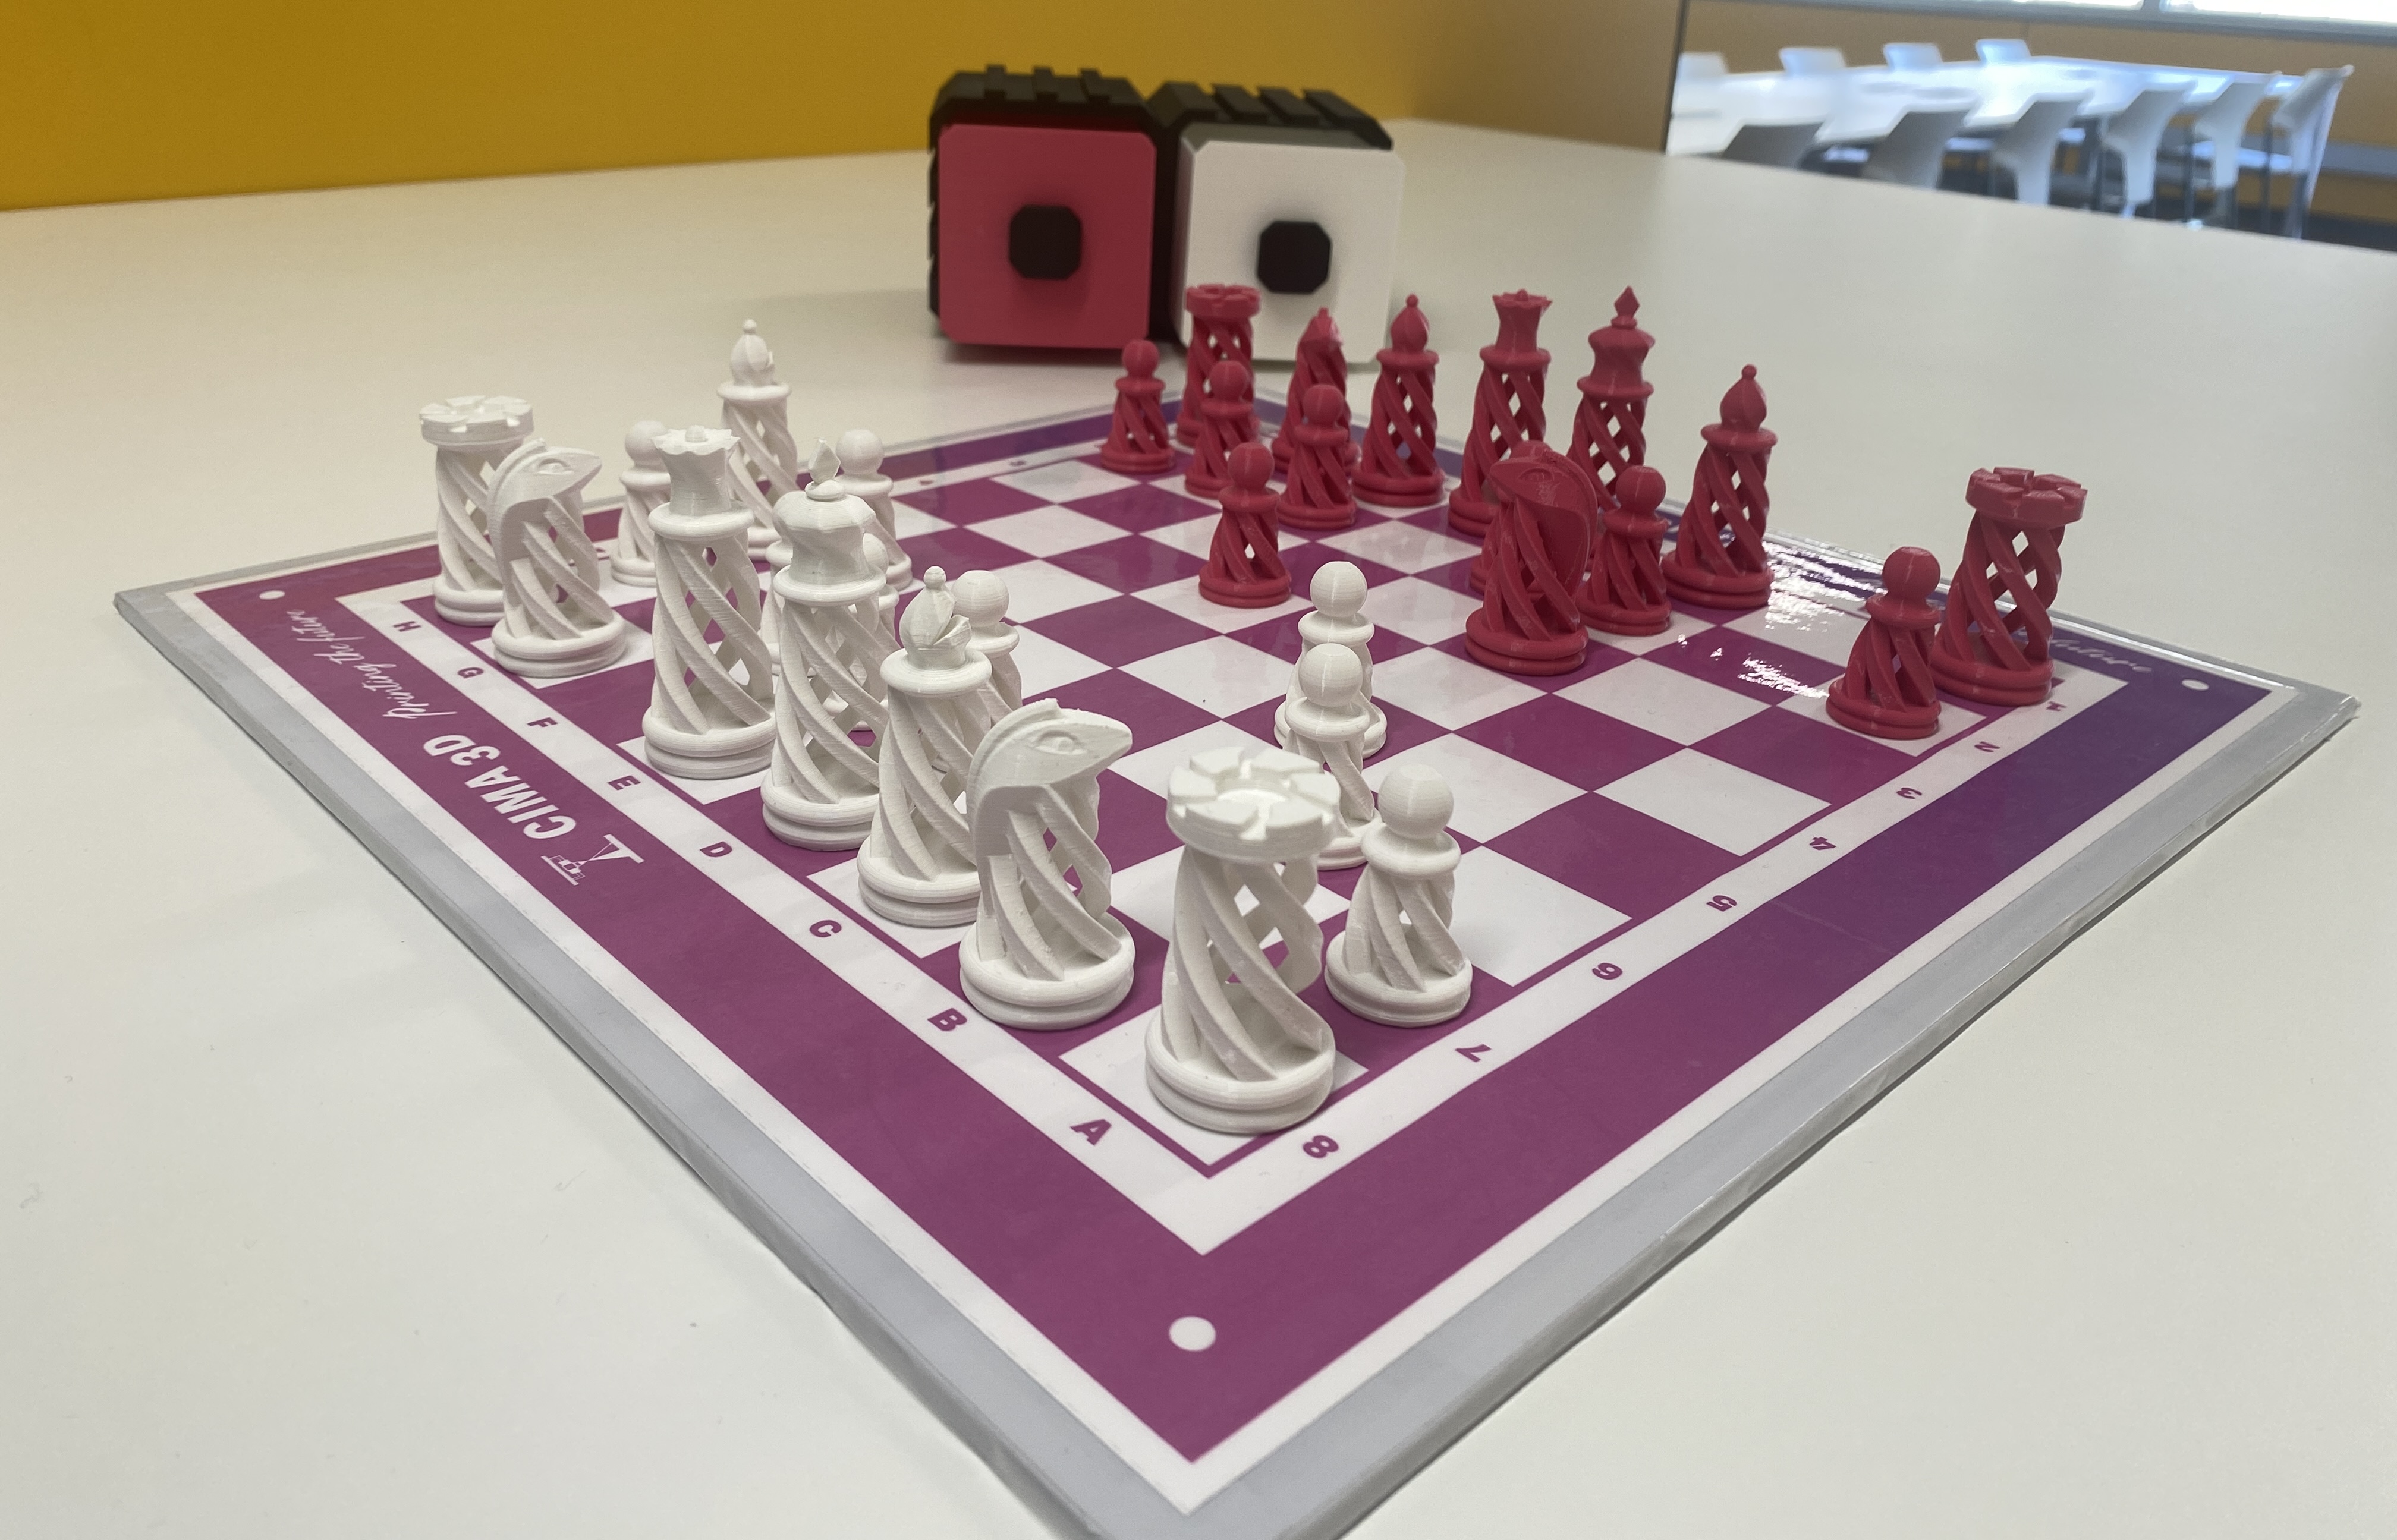 Nous taulers i peces d'escacs de CIMA 3D